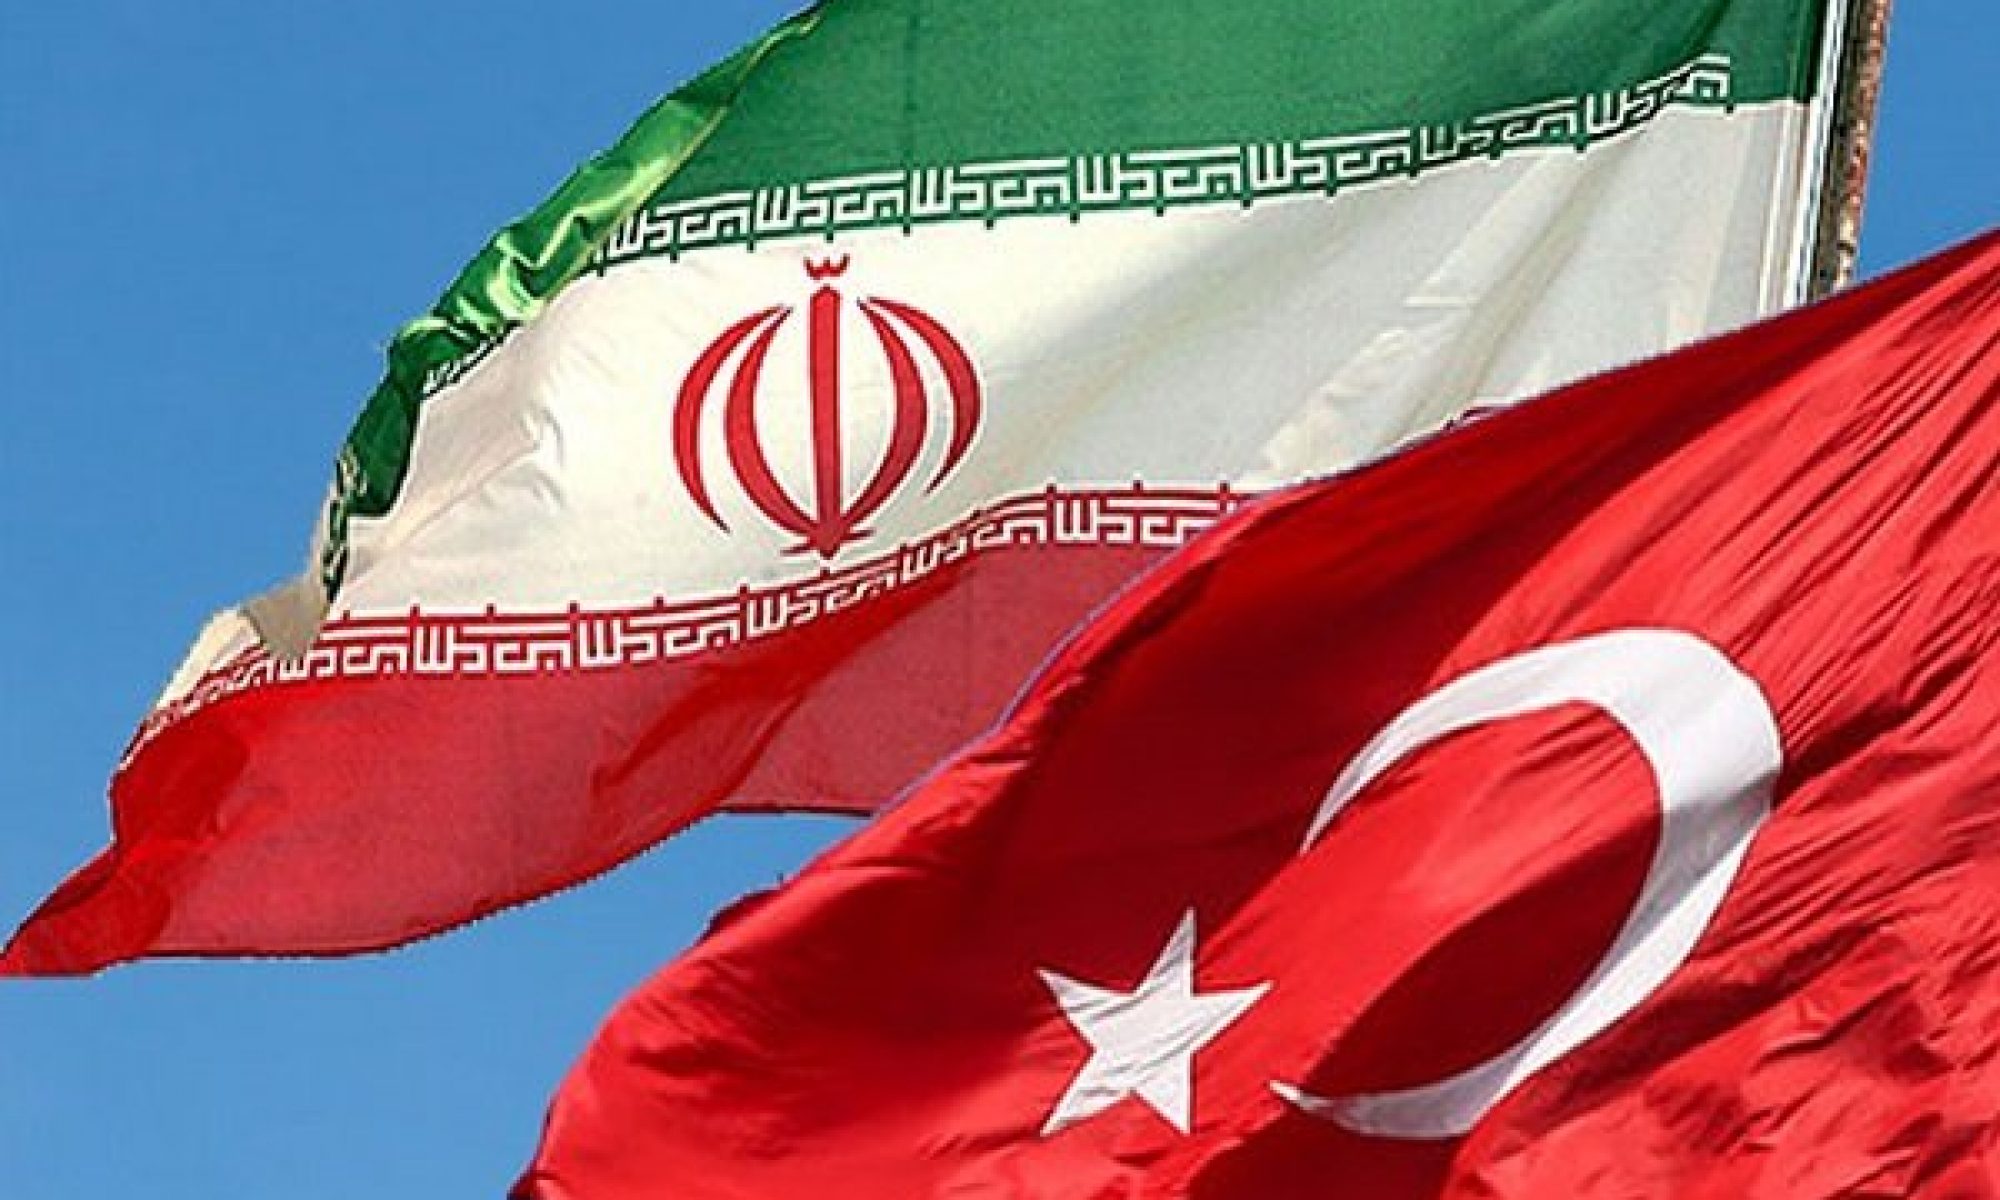 Şarkul Avsat İran'ın Türkiye'den kaçırdığı ve vurduğu siyasi muhaliflerin ilginç hikayelerini yazdı